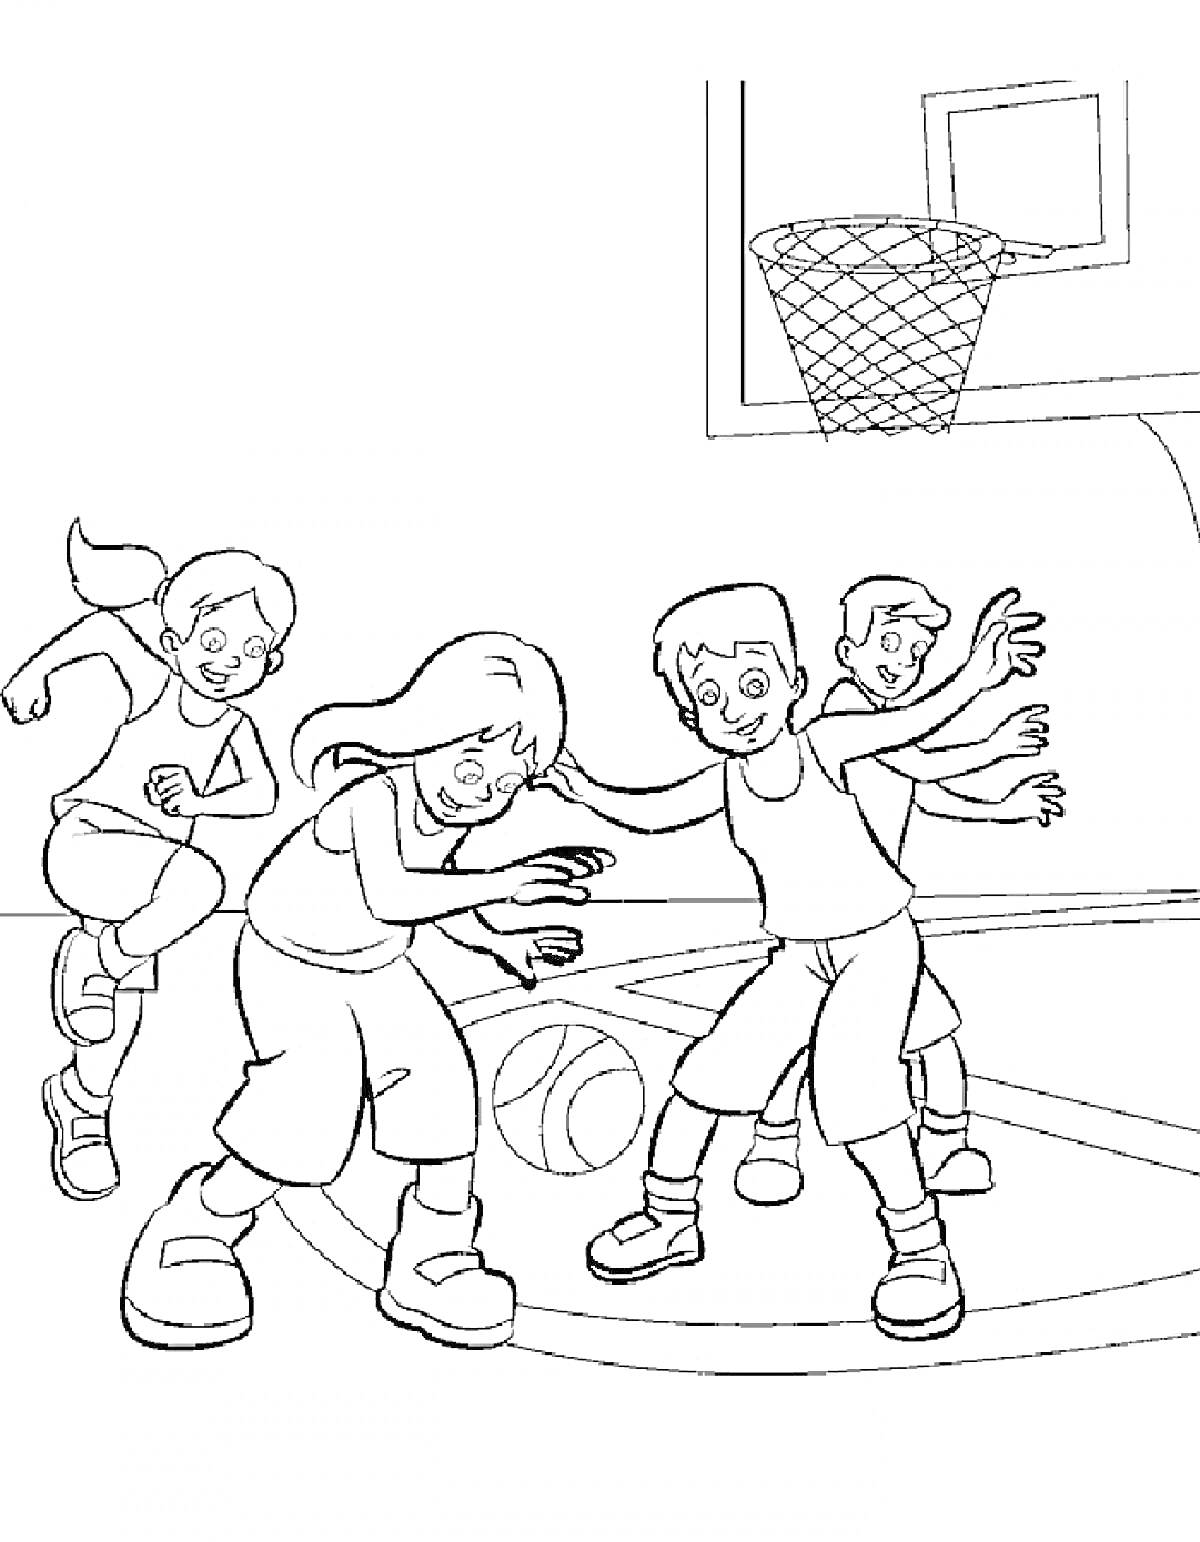 Раскраска Дети играют в баскетбол на баскетбольной площадке